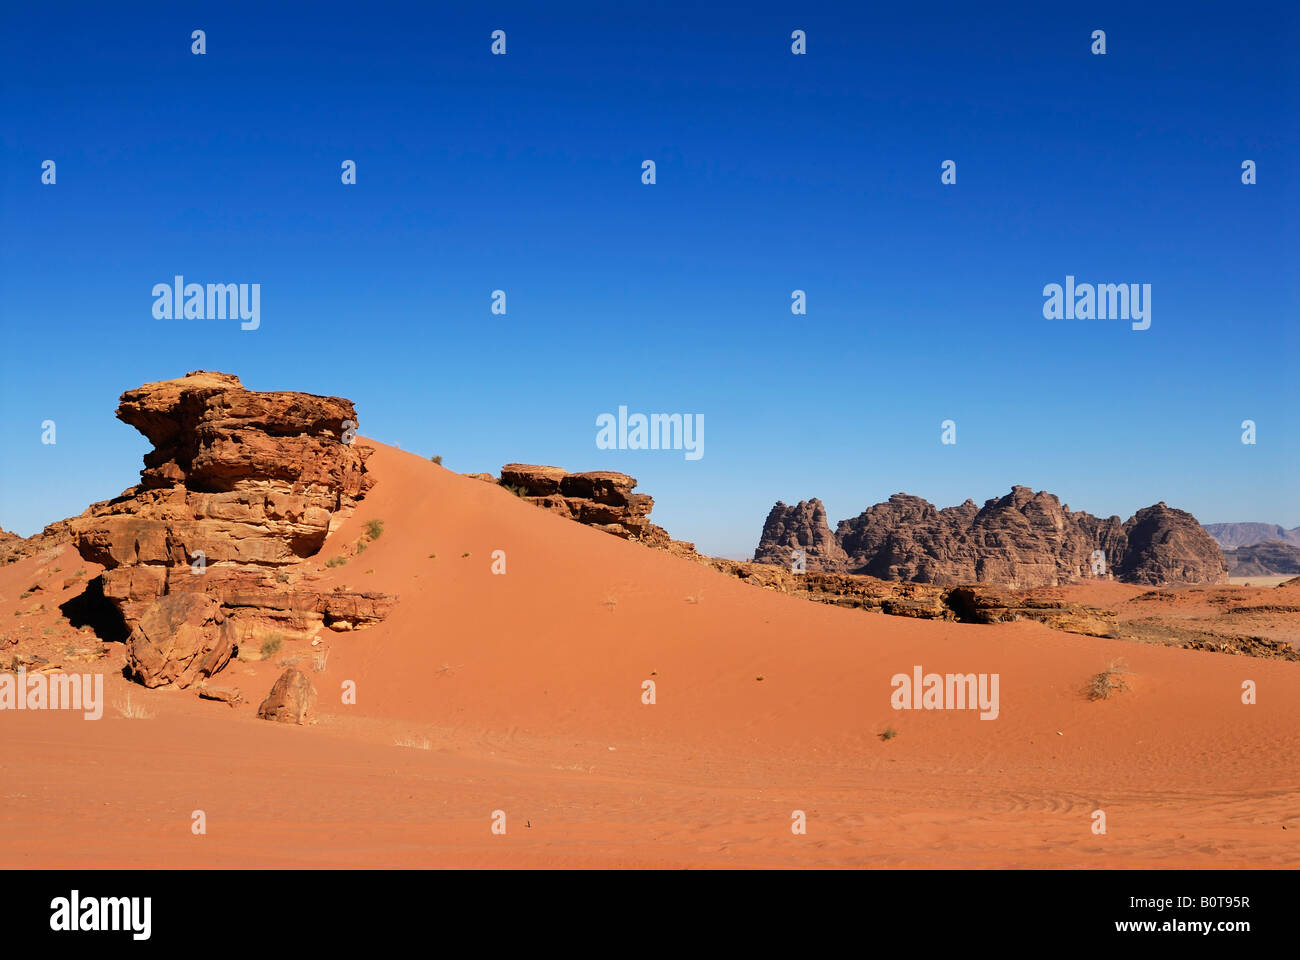 desert of Wadi Rum in Jordan, Arabia Stock Photo